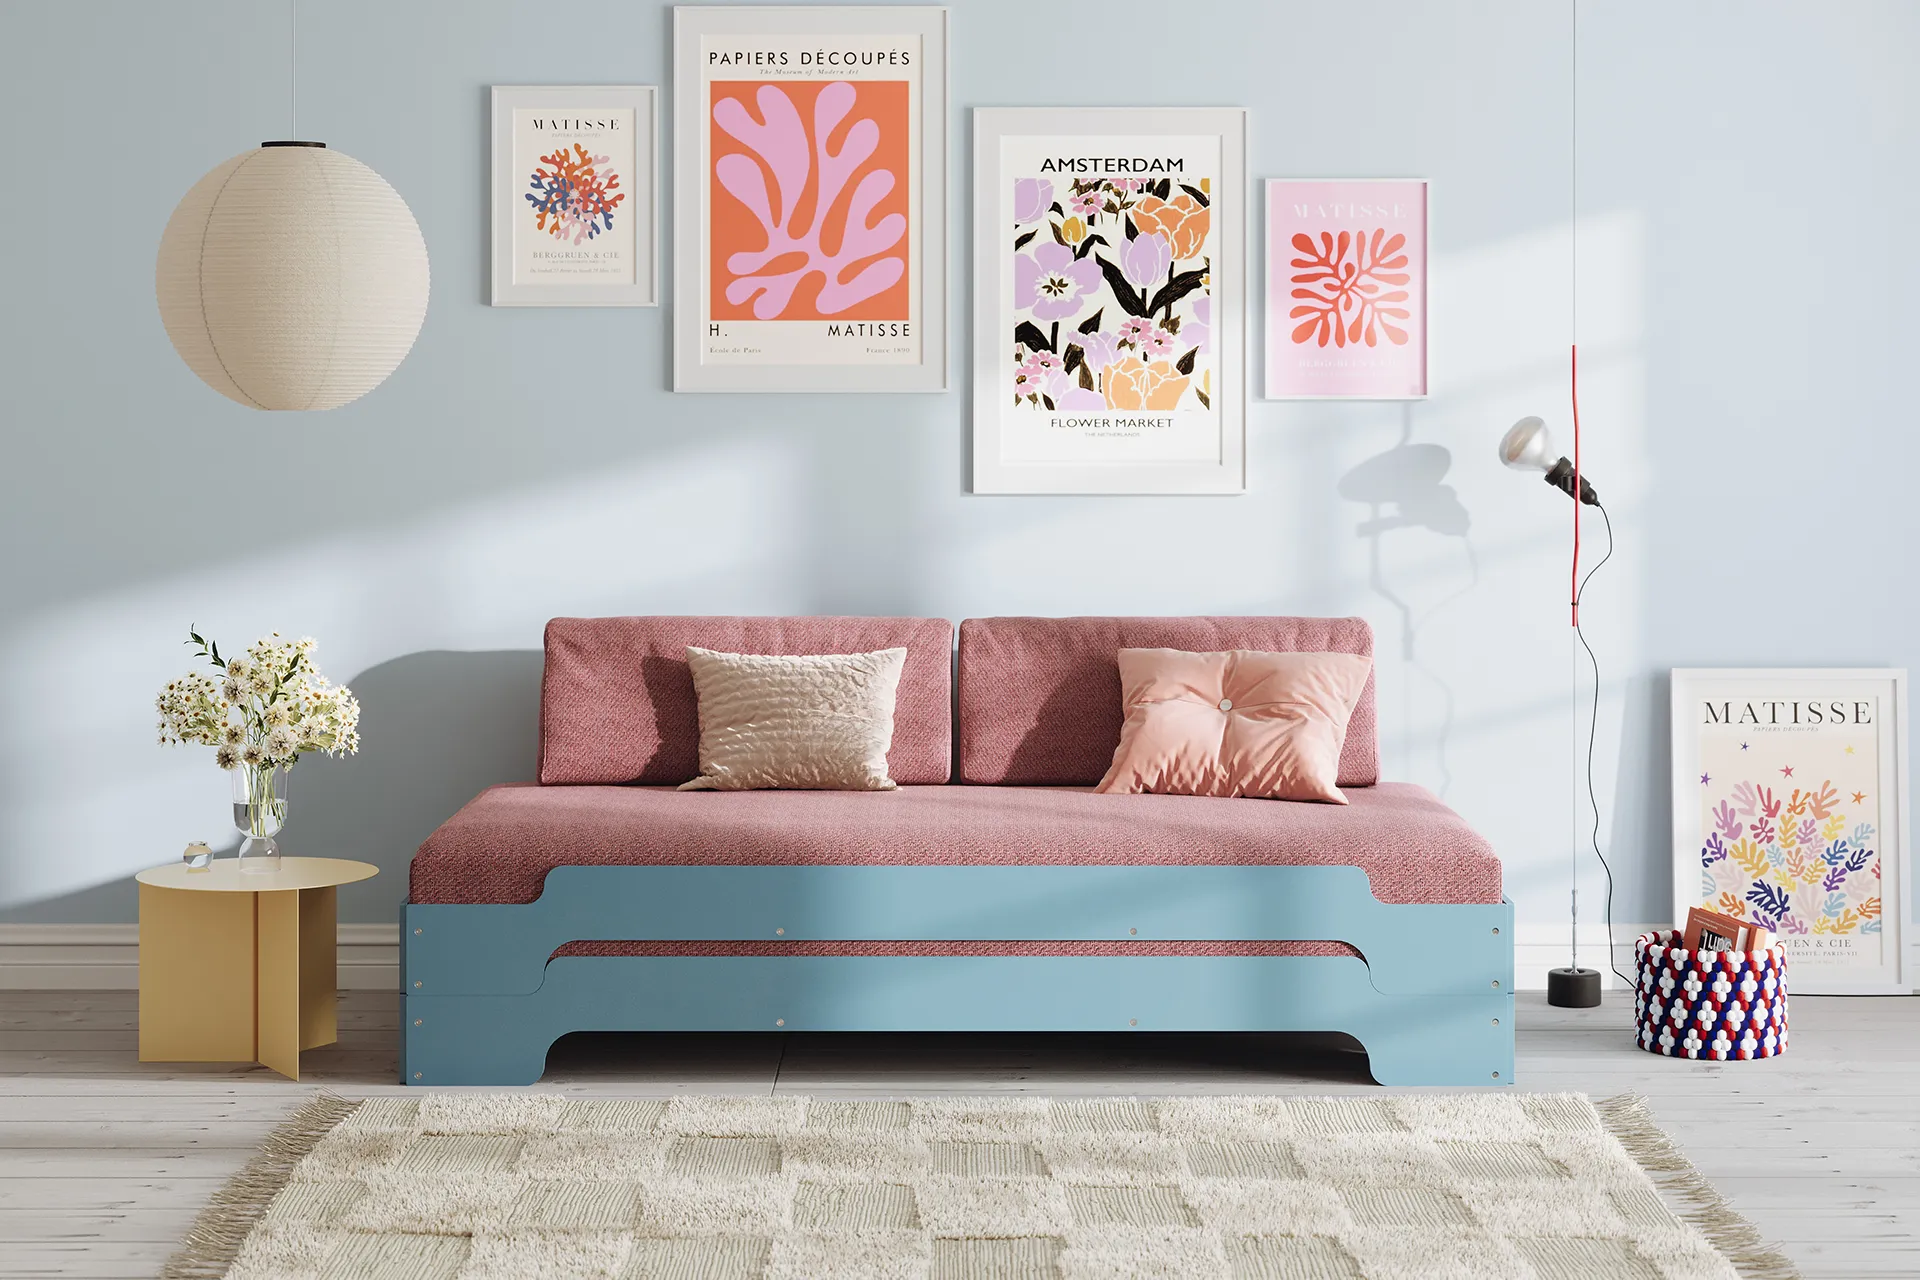 Das Stapelbett in blau mit einer Matraze mit edlem Venito Bezugsstoff in cherryrot wird mit den passenden Rückenkissen zum stylischen Sofa in jedem Kinderzimmer oder auch Gästezimmer